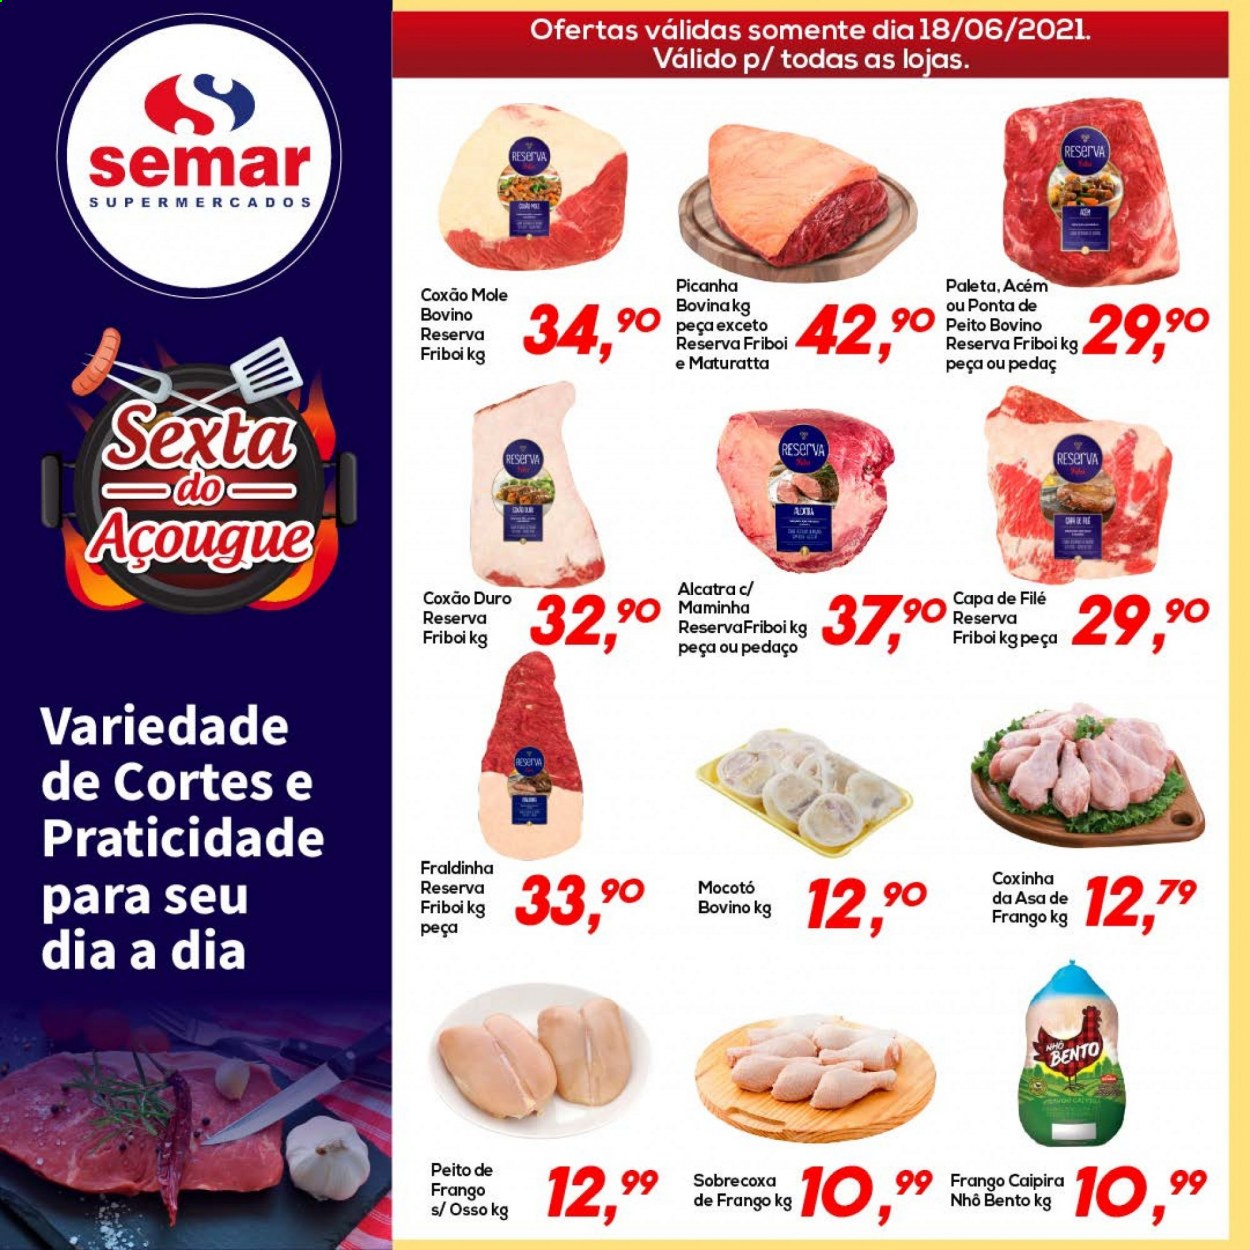 Encarte Semar Supermercados  - 18.06.2021 - 18.06.2021.